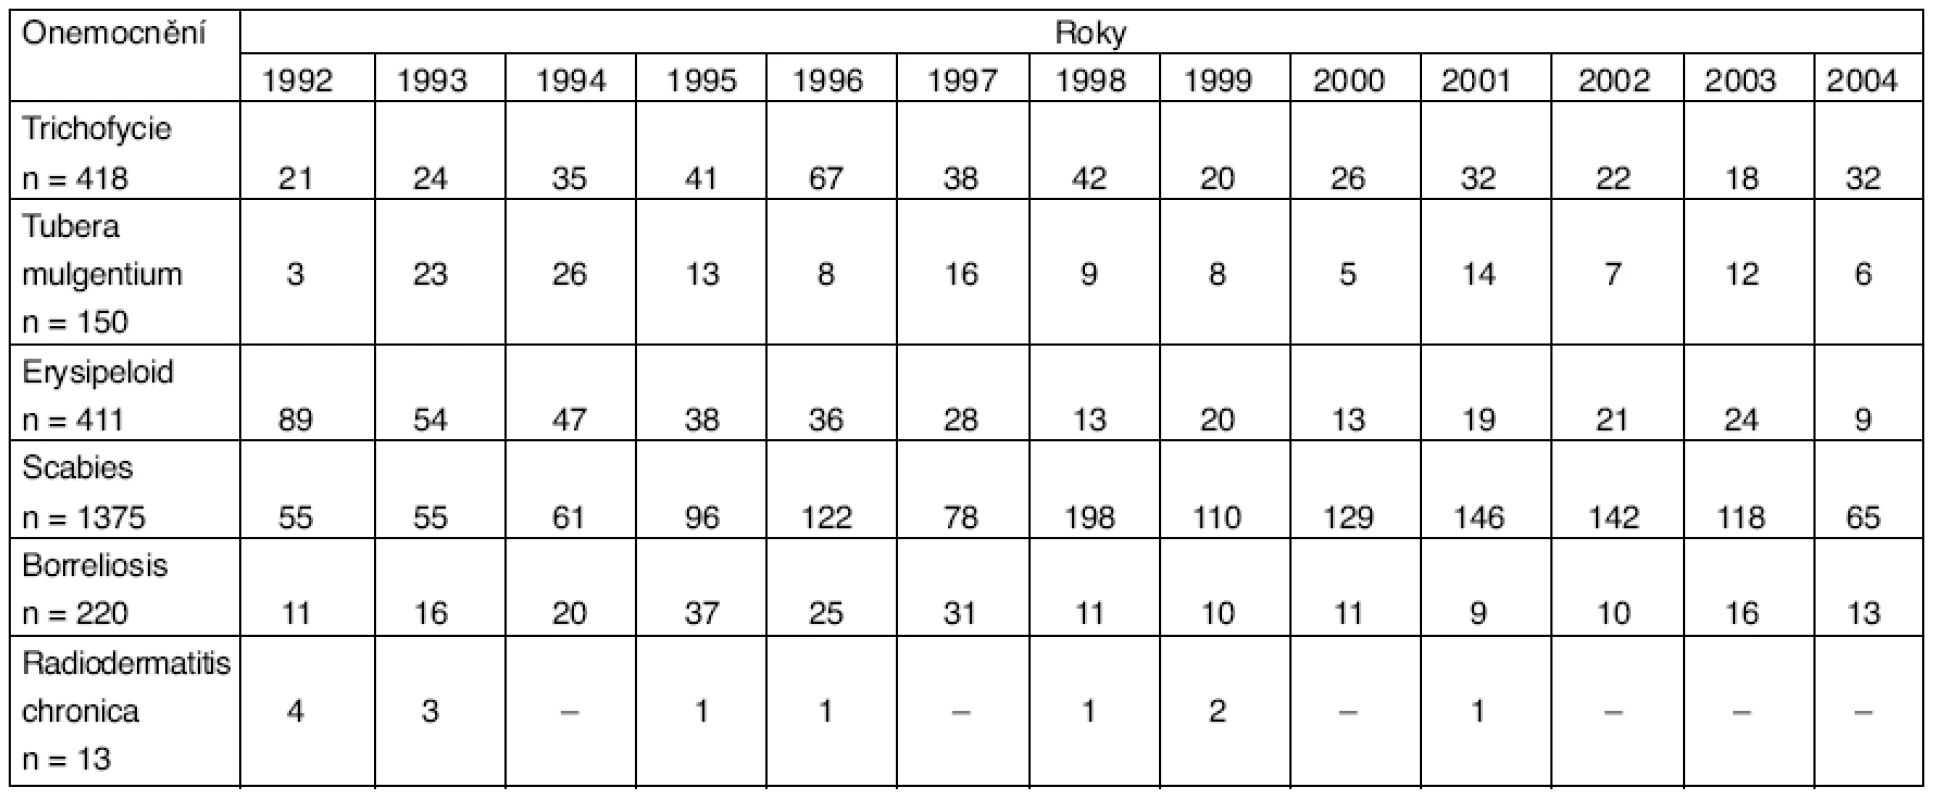 Profesionální infekční onemocnění a chronické radiodermatitidy v ČR v období 1992–2004